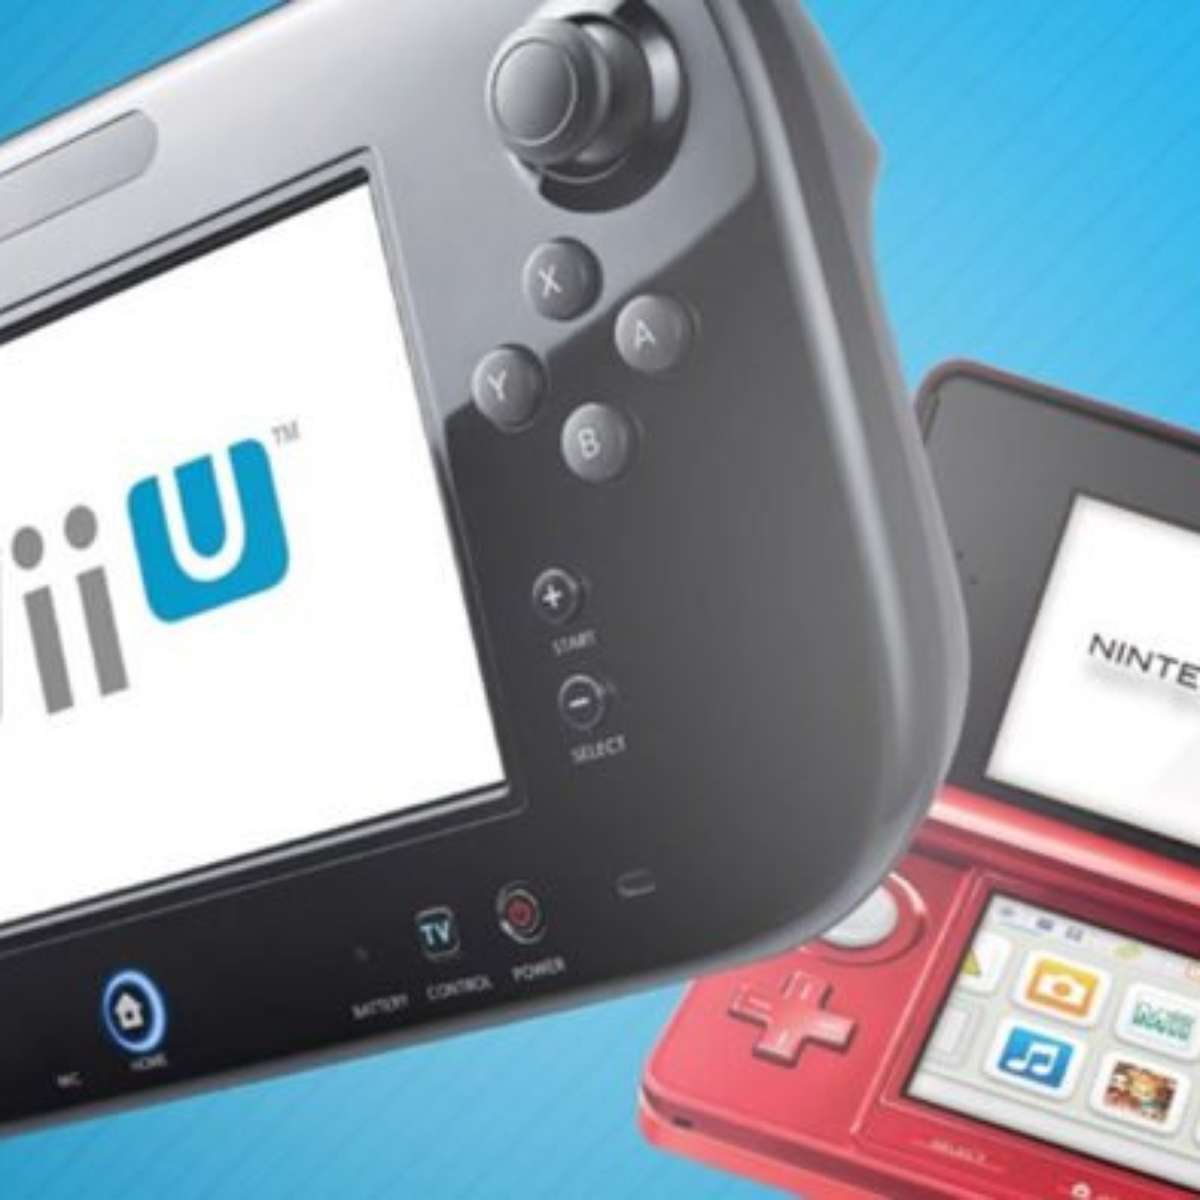 eShop do 3DS e Wii U fecham na próxima semana; saiba como comprar seus jogos  - Canaltech